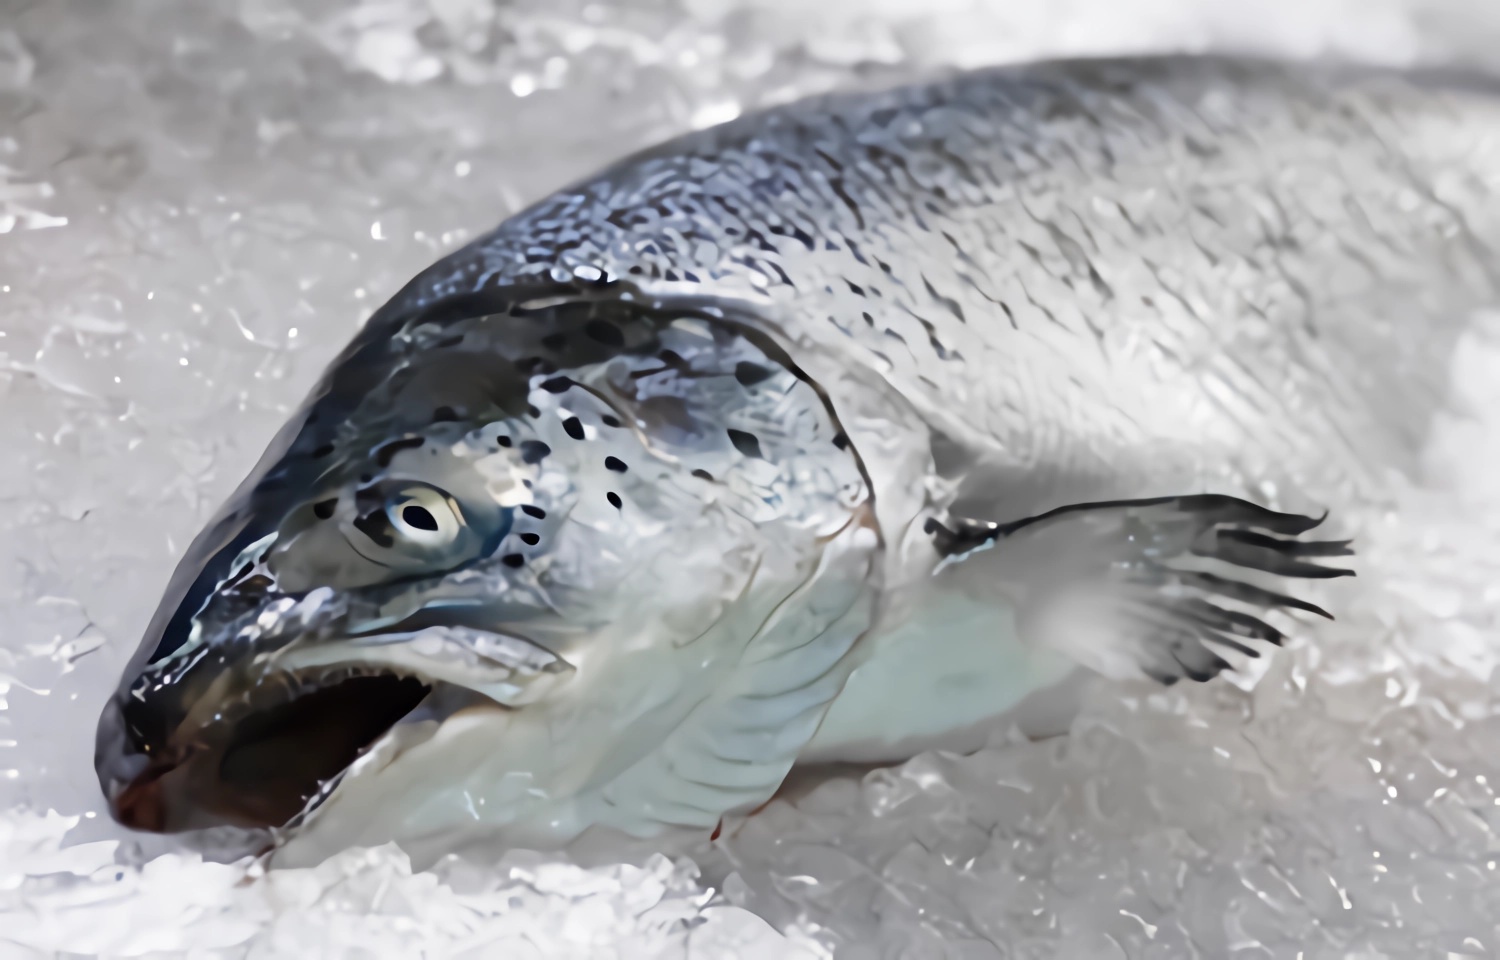 Noruega reporta gran caída de los precios semanales del salmón Atlántico